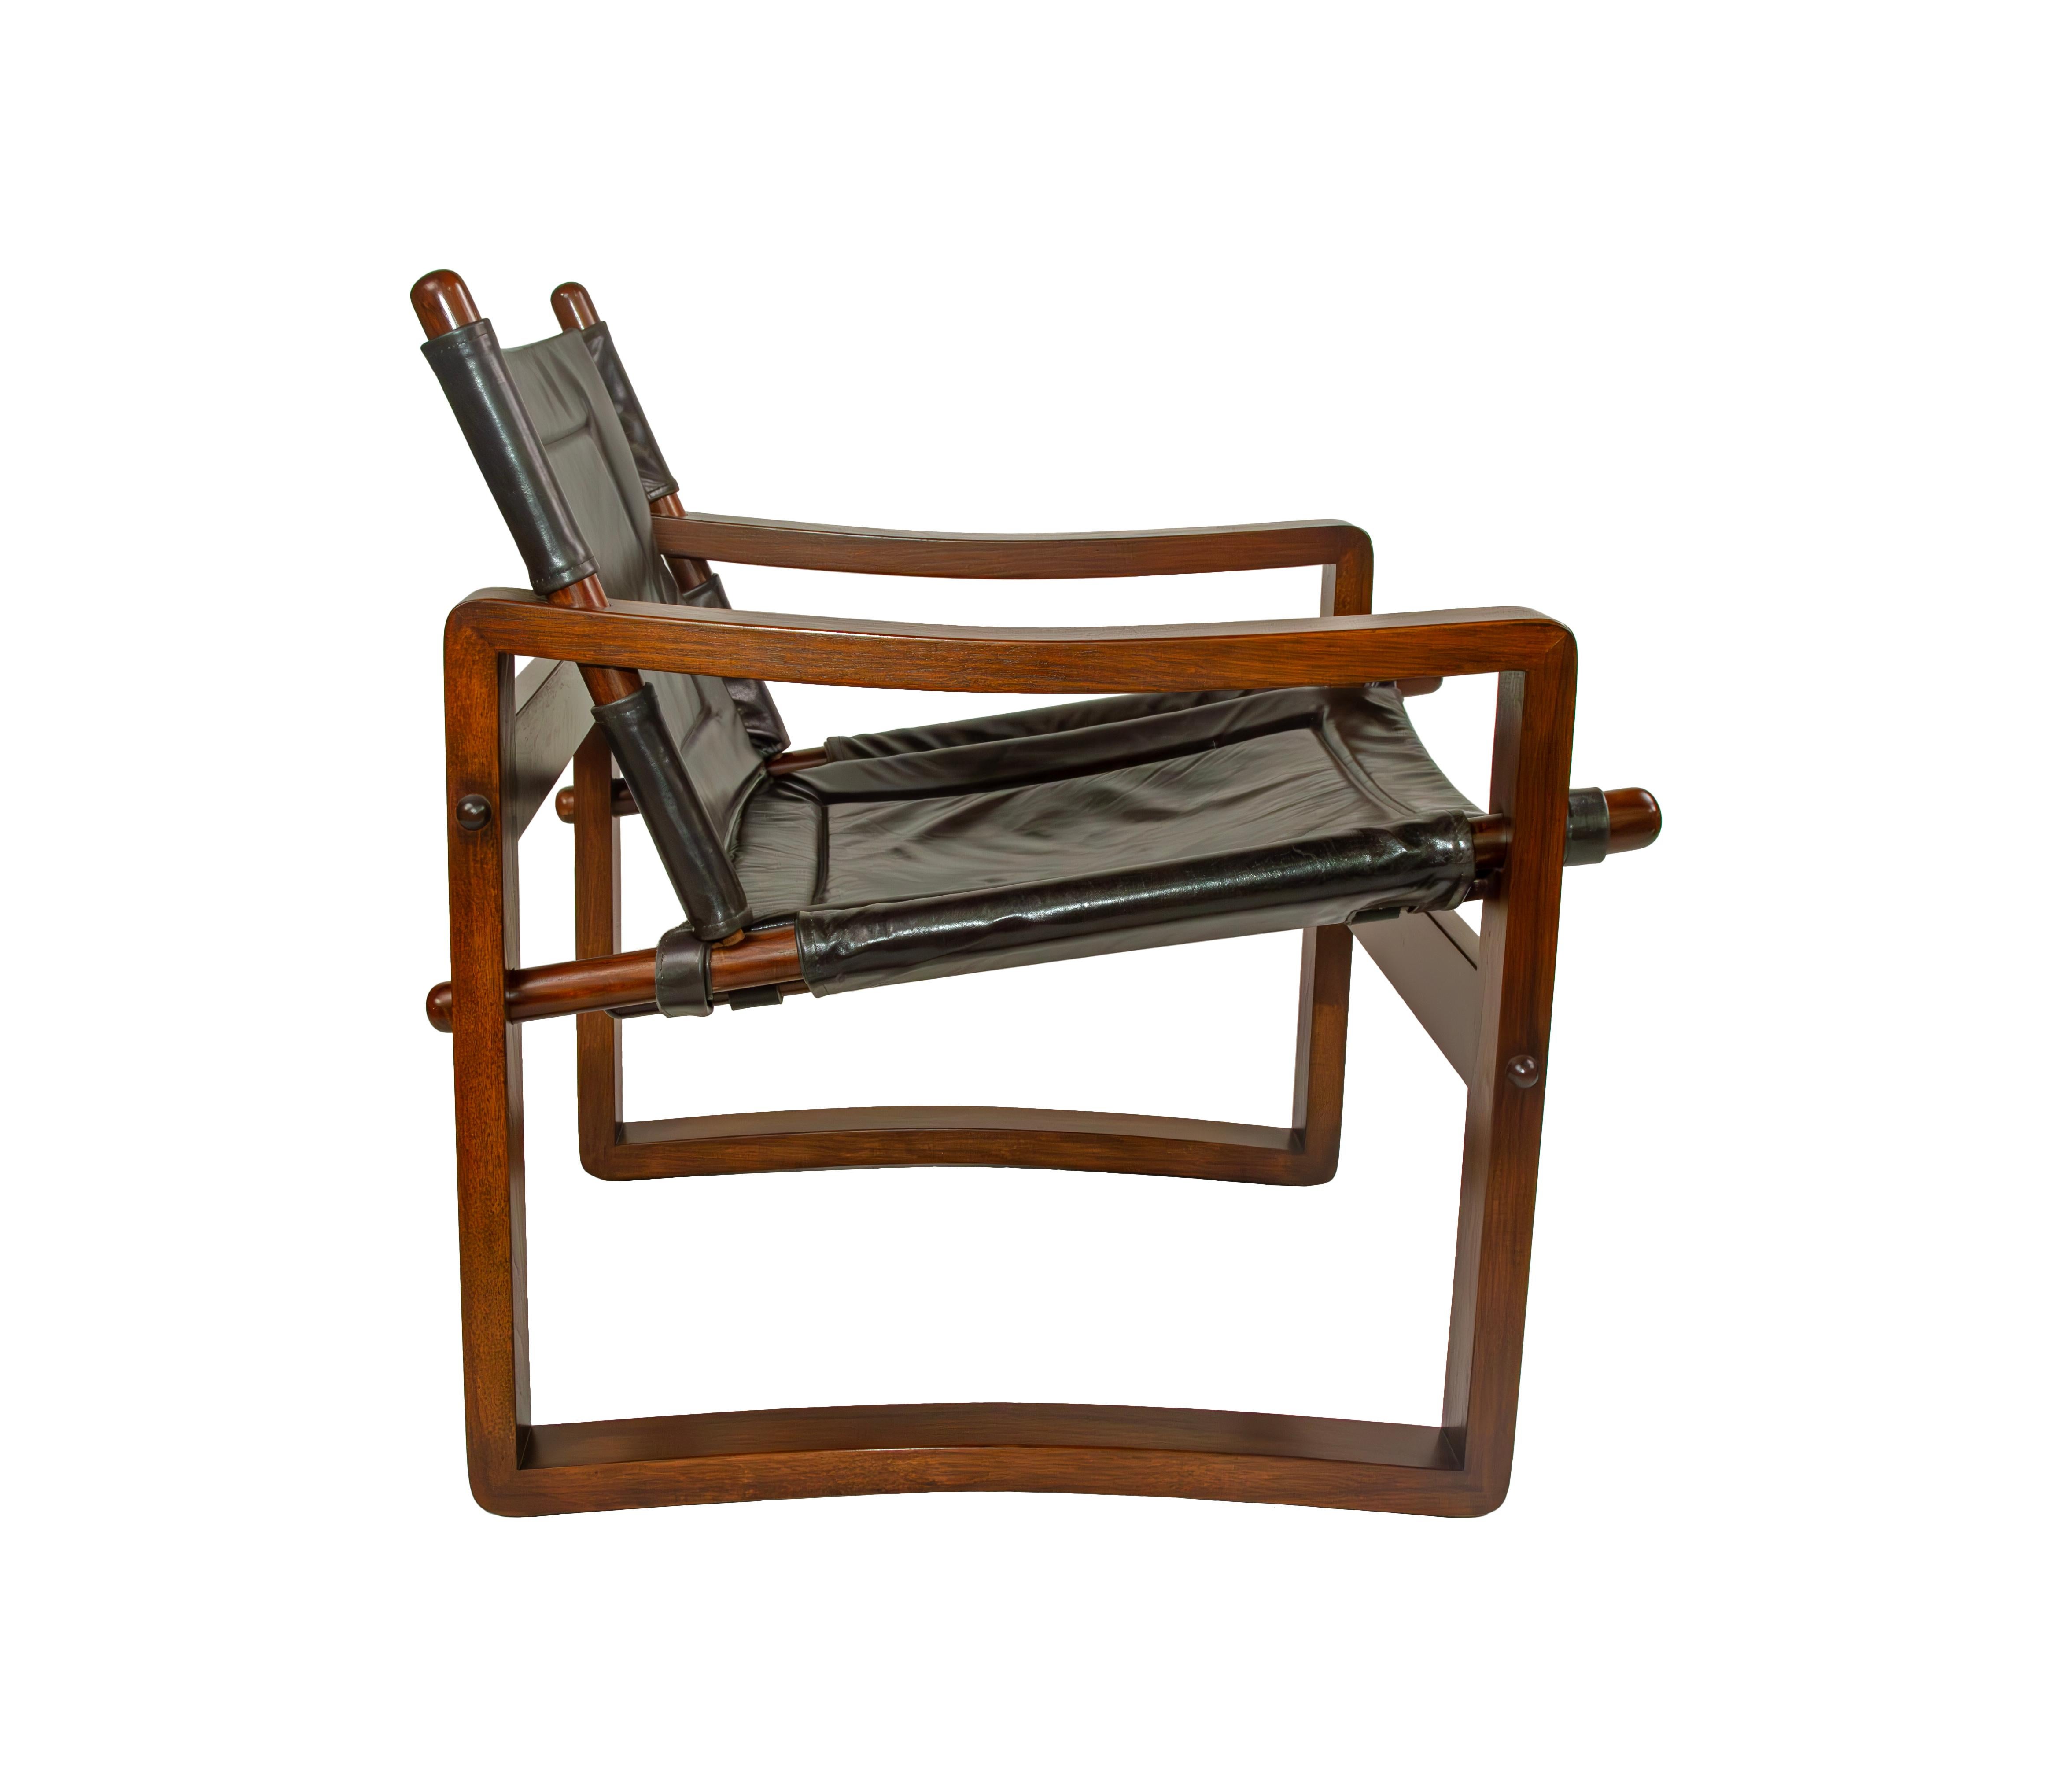 La chaise Campaigner Safari fait référence au mobilier danois du milieu du siècle dernier des années 1960 avec son cadre simple et gracieusement incurvé. Tapissée d'une assise en bandoulière fixée par de solides lanières de cuir, la chaise est